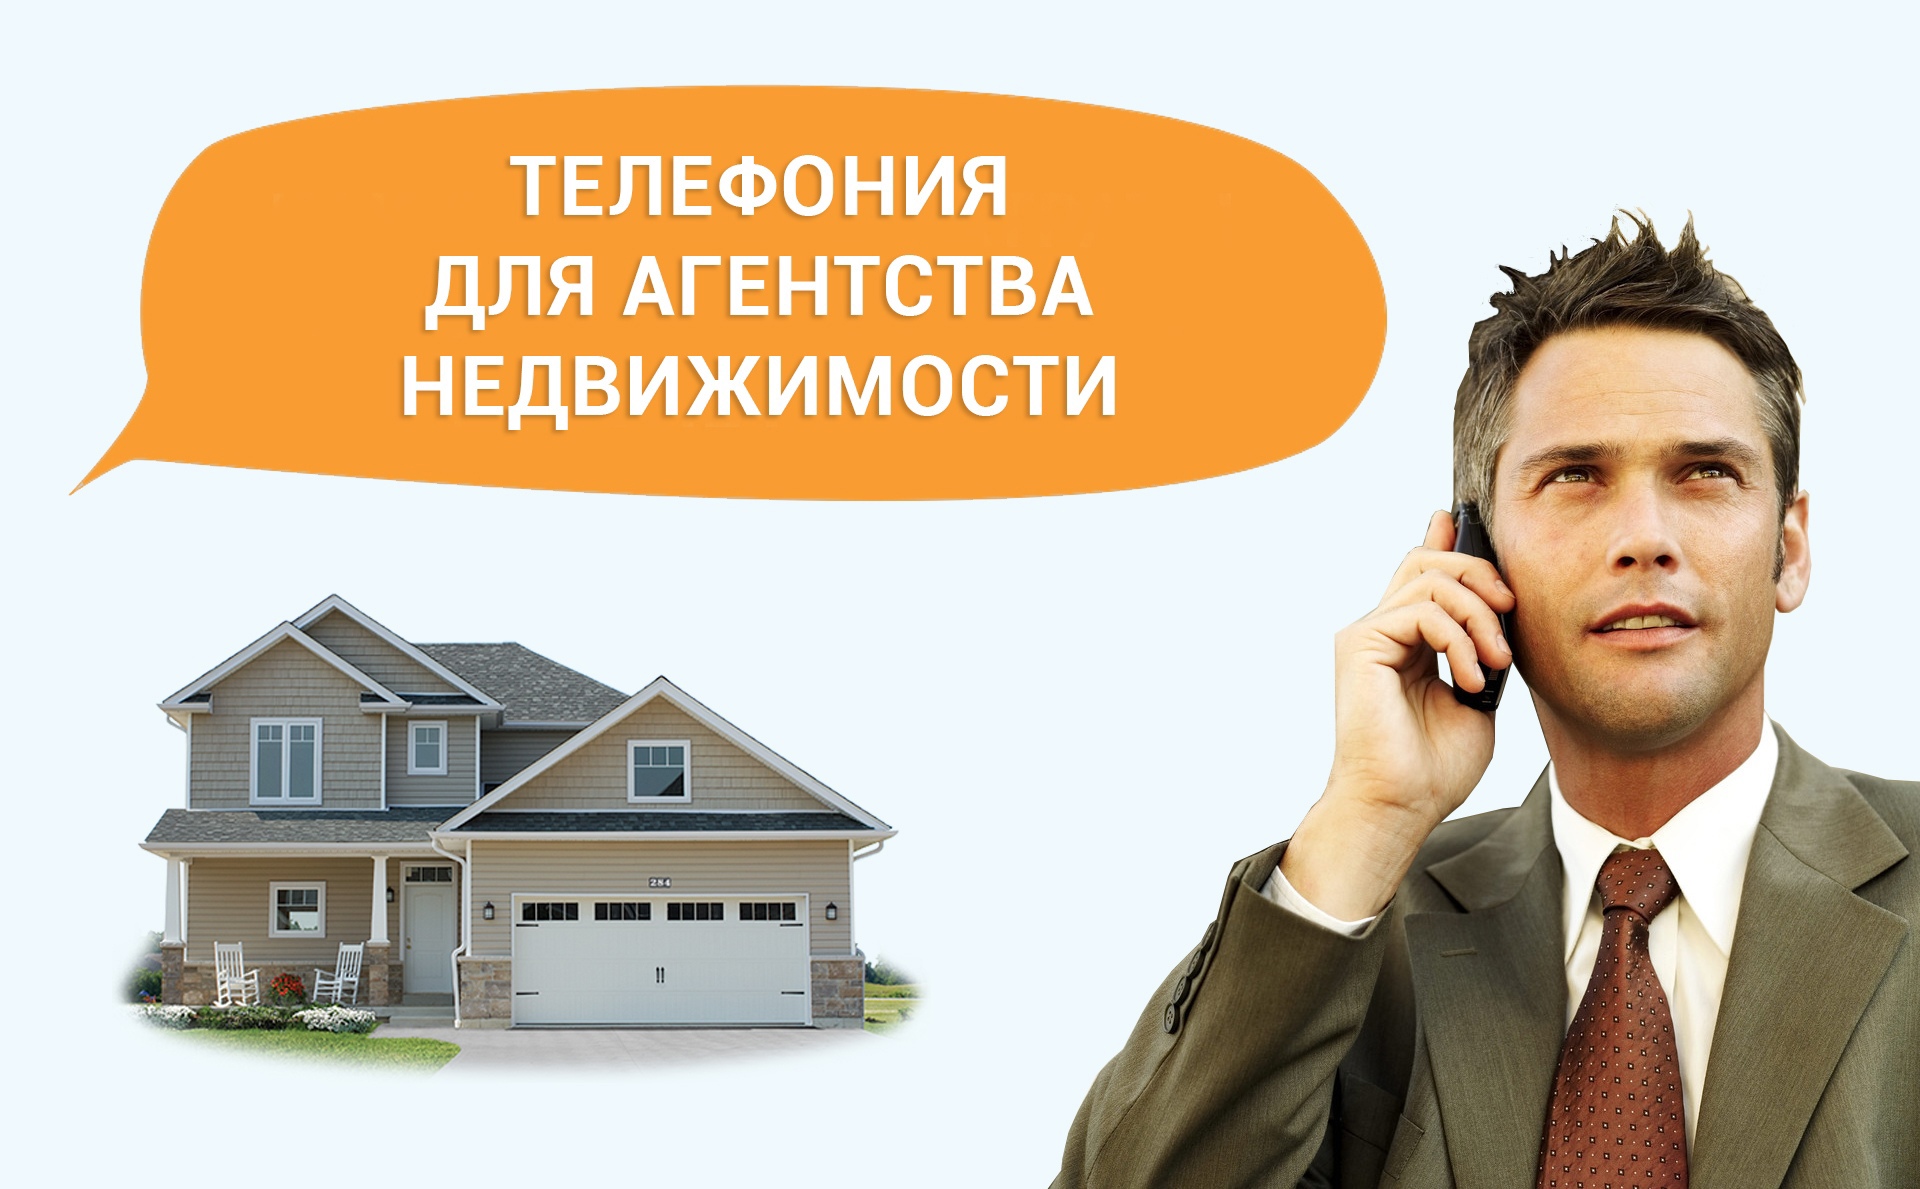 Телефония для агентства недвижимости: рассказываем о возможностях, раскрываем секреты